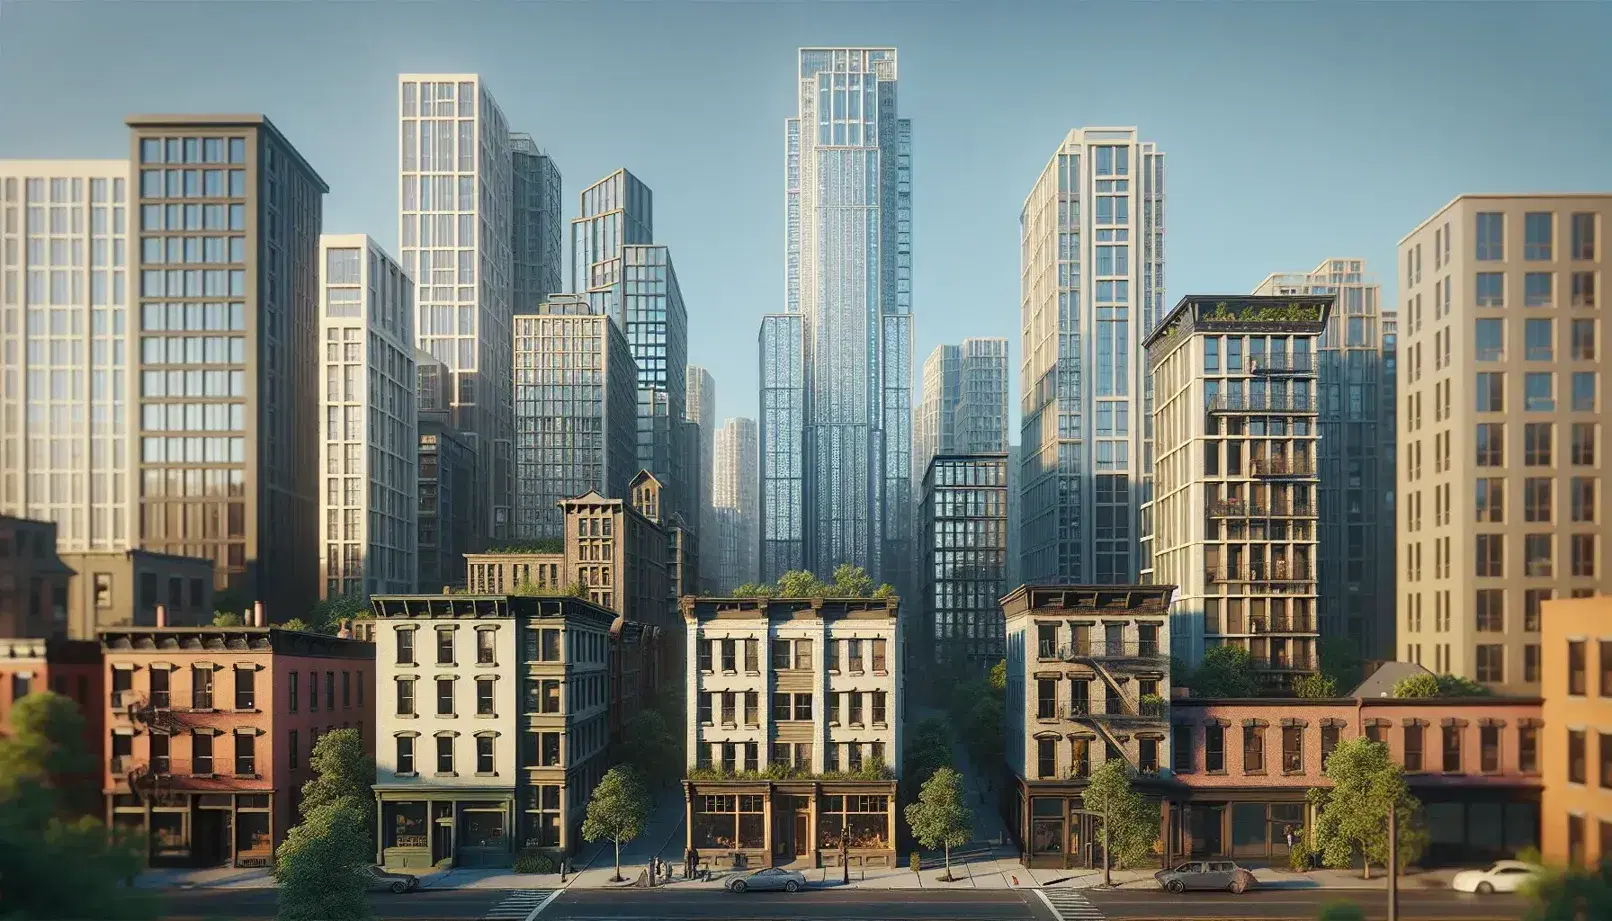 Edificios urbanos ascendentes desde una pequeña construcción de ladrillo hasta un rascacielos de acero y vidrio, con árboles dispersos bajo un cielo azul claro.